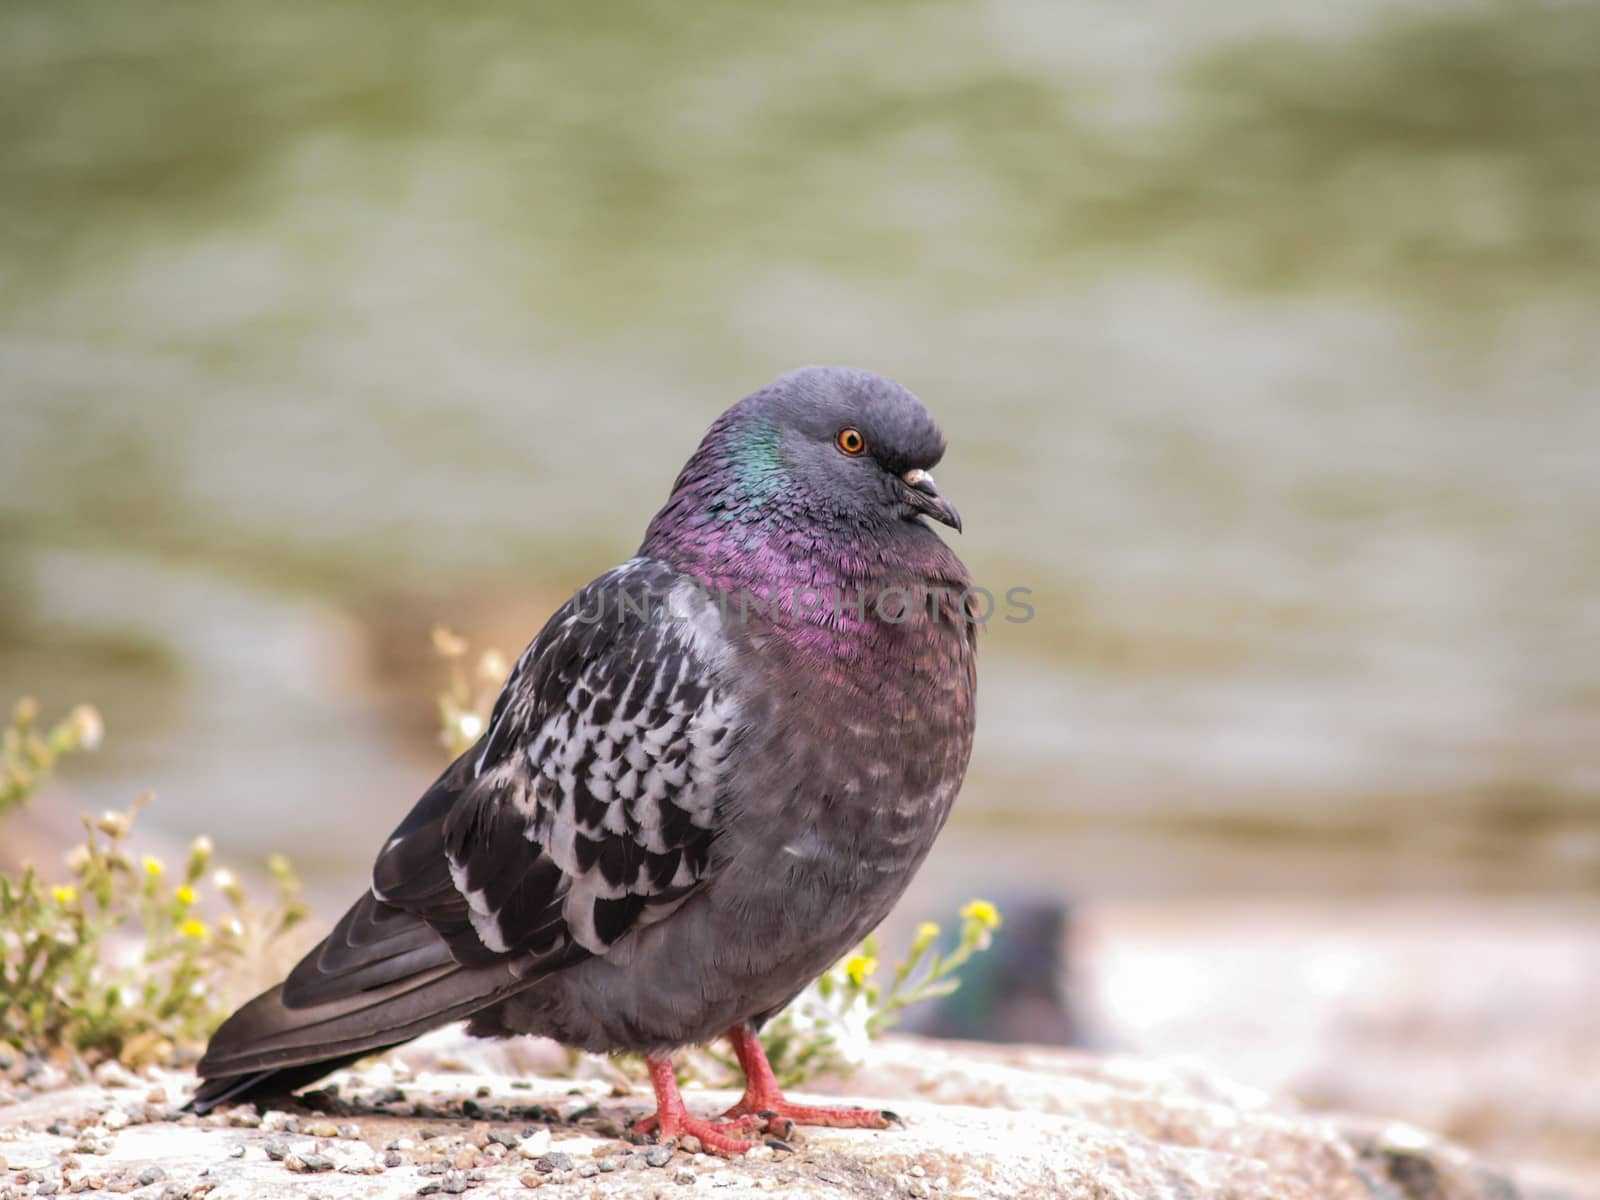 Blue-green pigeon by Arvebettum